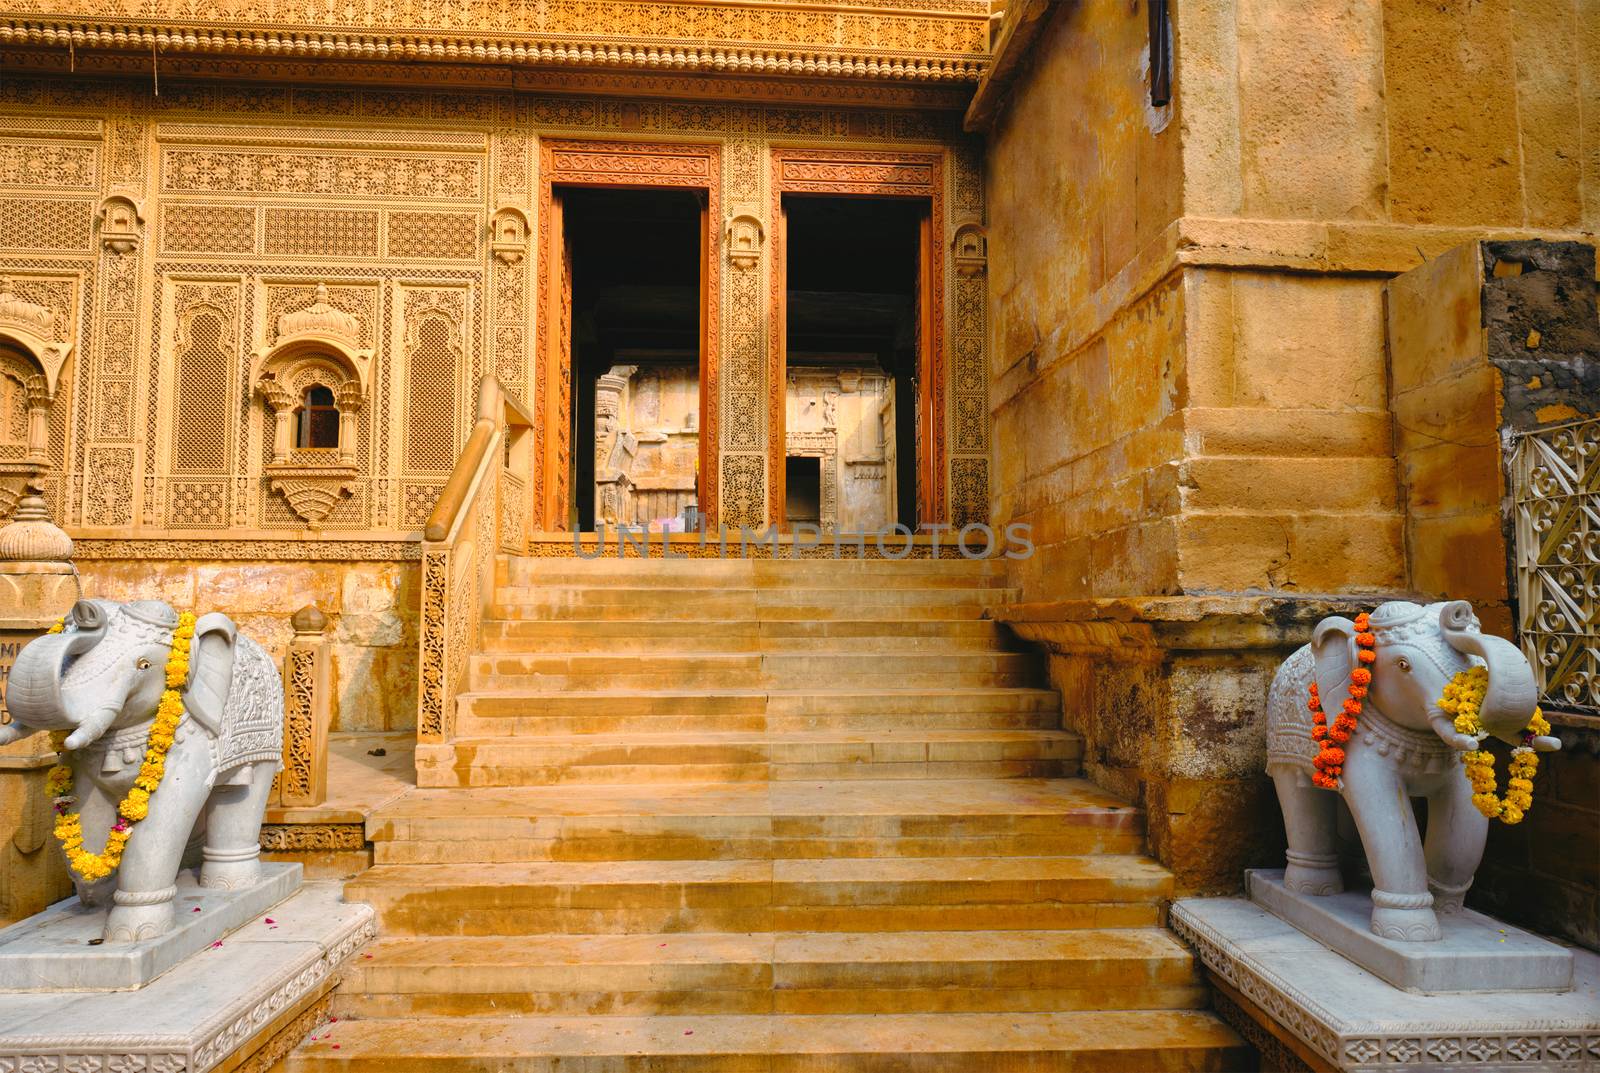 Laxmi Nath Ji Ka Mandir Laxminath Temple Hindu shrine inside Jaisalmer Fort. Jaisalmer, Rajasthan, India